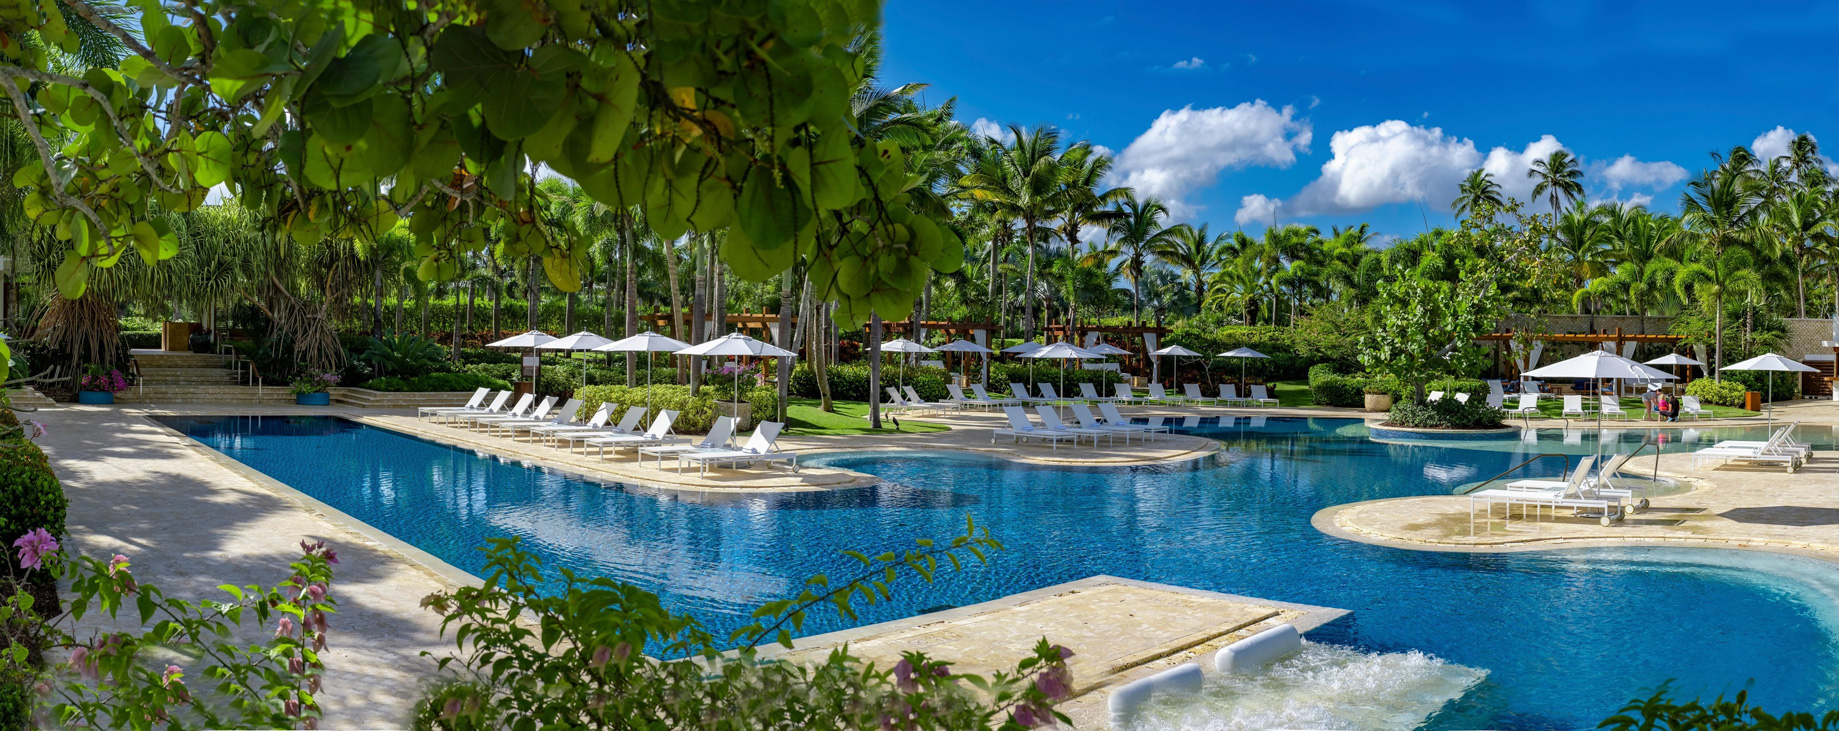 The Ritz-Carlton, Dorado Beach Reserve Resort – Puerto Rico – Encanto Pool